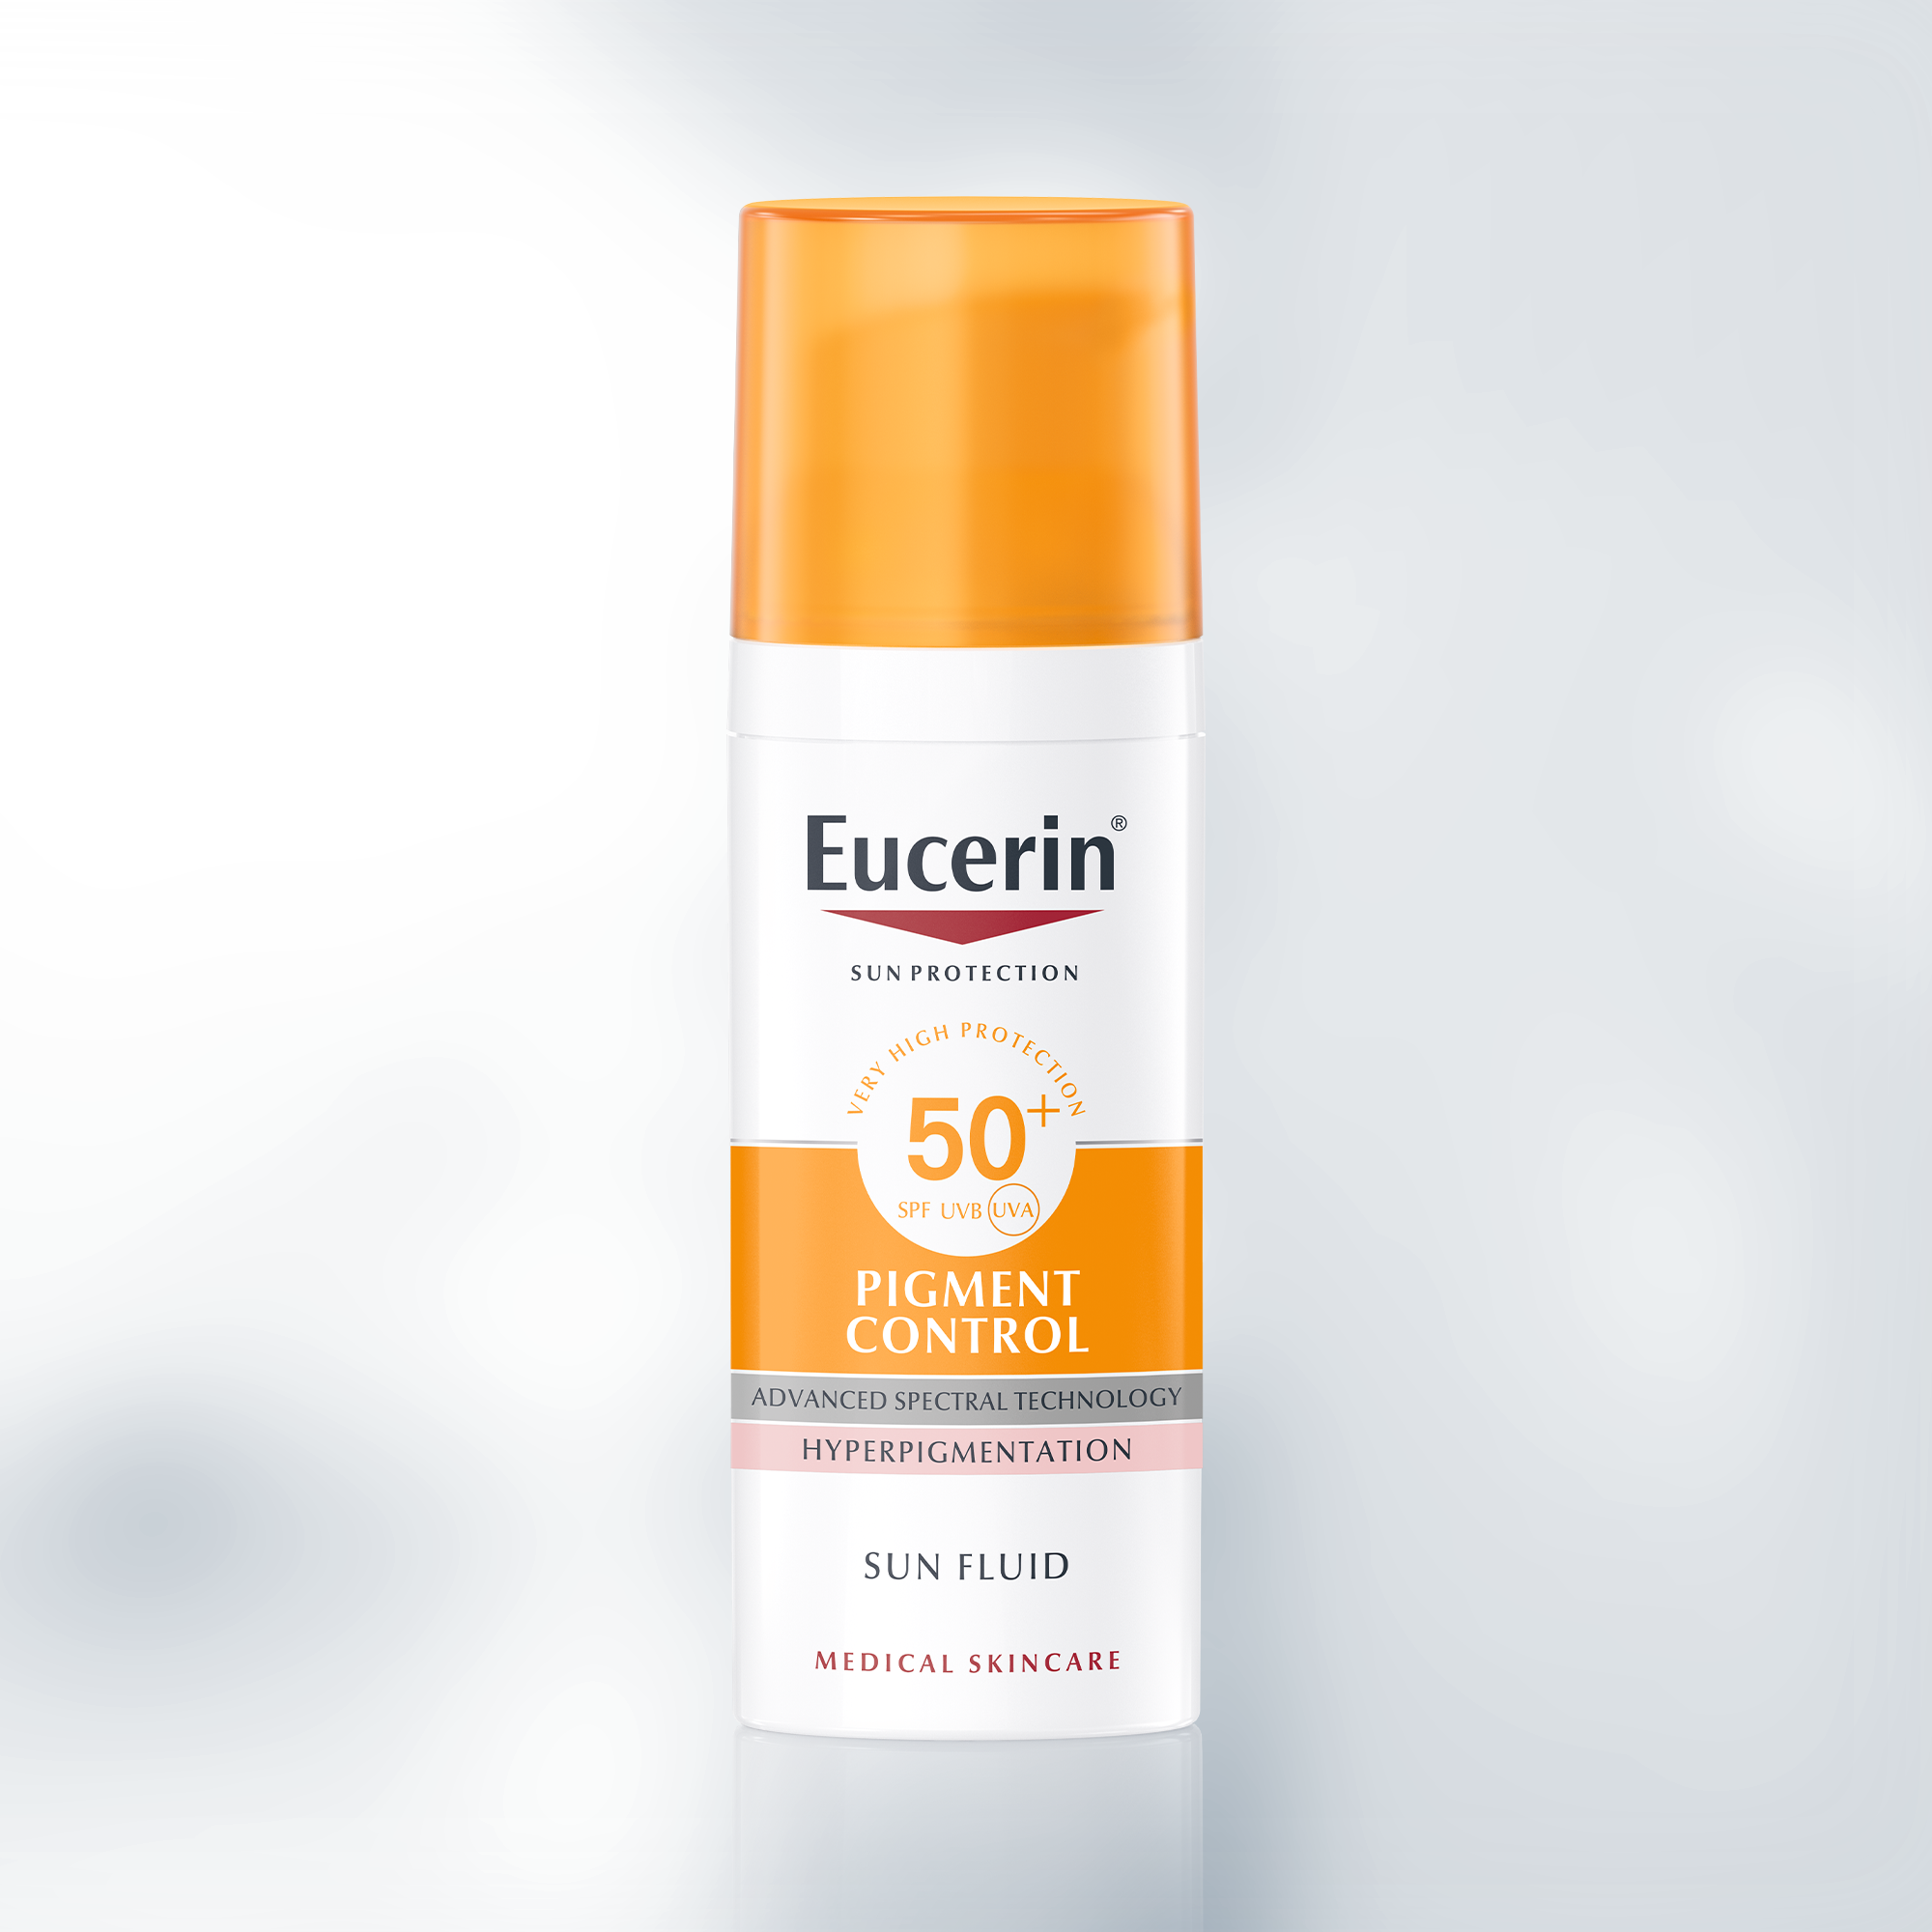 Eucerin Sun Fluido Pigment Control SPF 50+